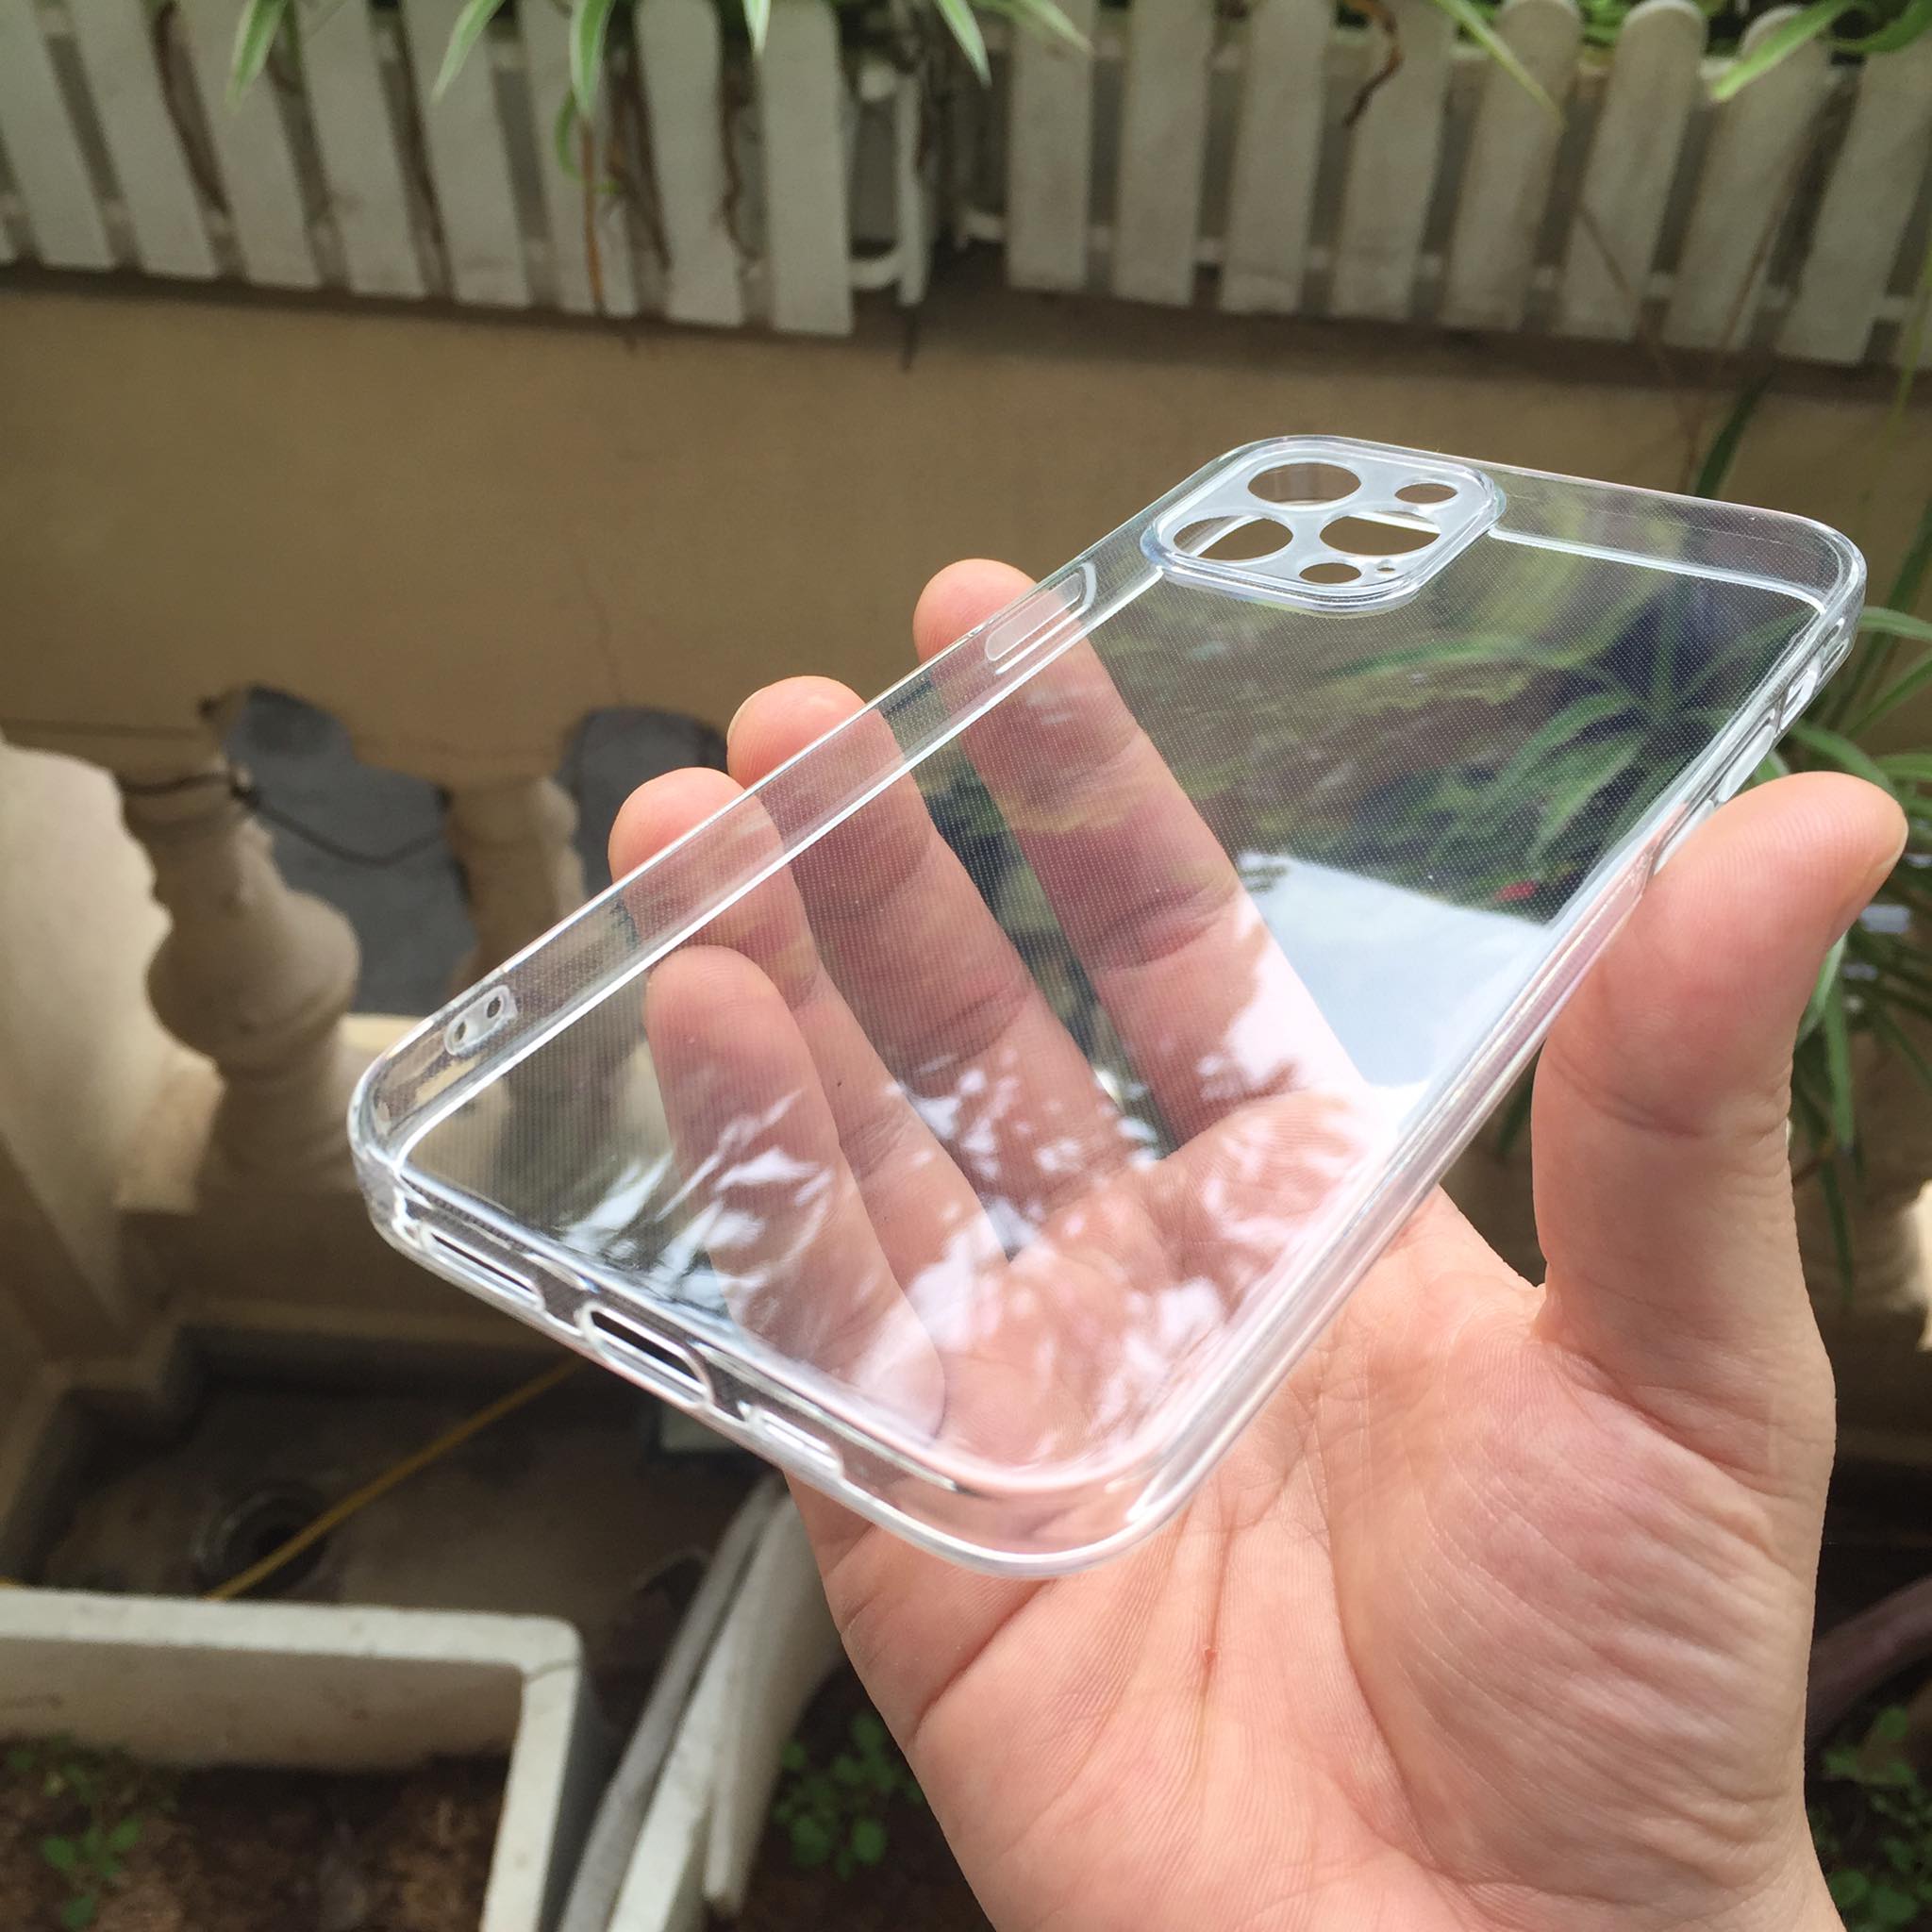 Hình ảnh Ốp lưng silicon Gor cho Apple iPhone 12 Pro 6.1 inch siêu mỏng, có gờ bảo vệ camera- Hàng nhập khẩu